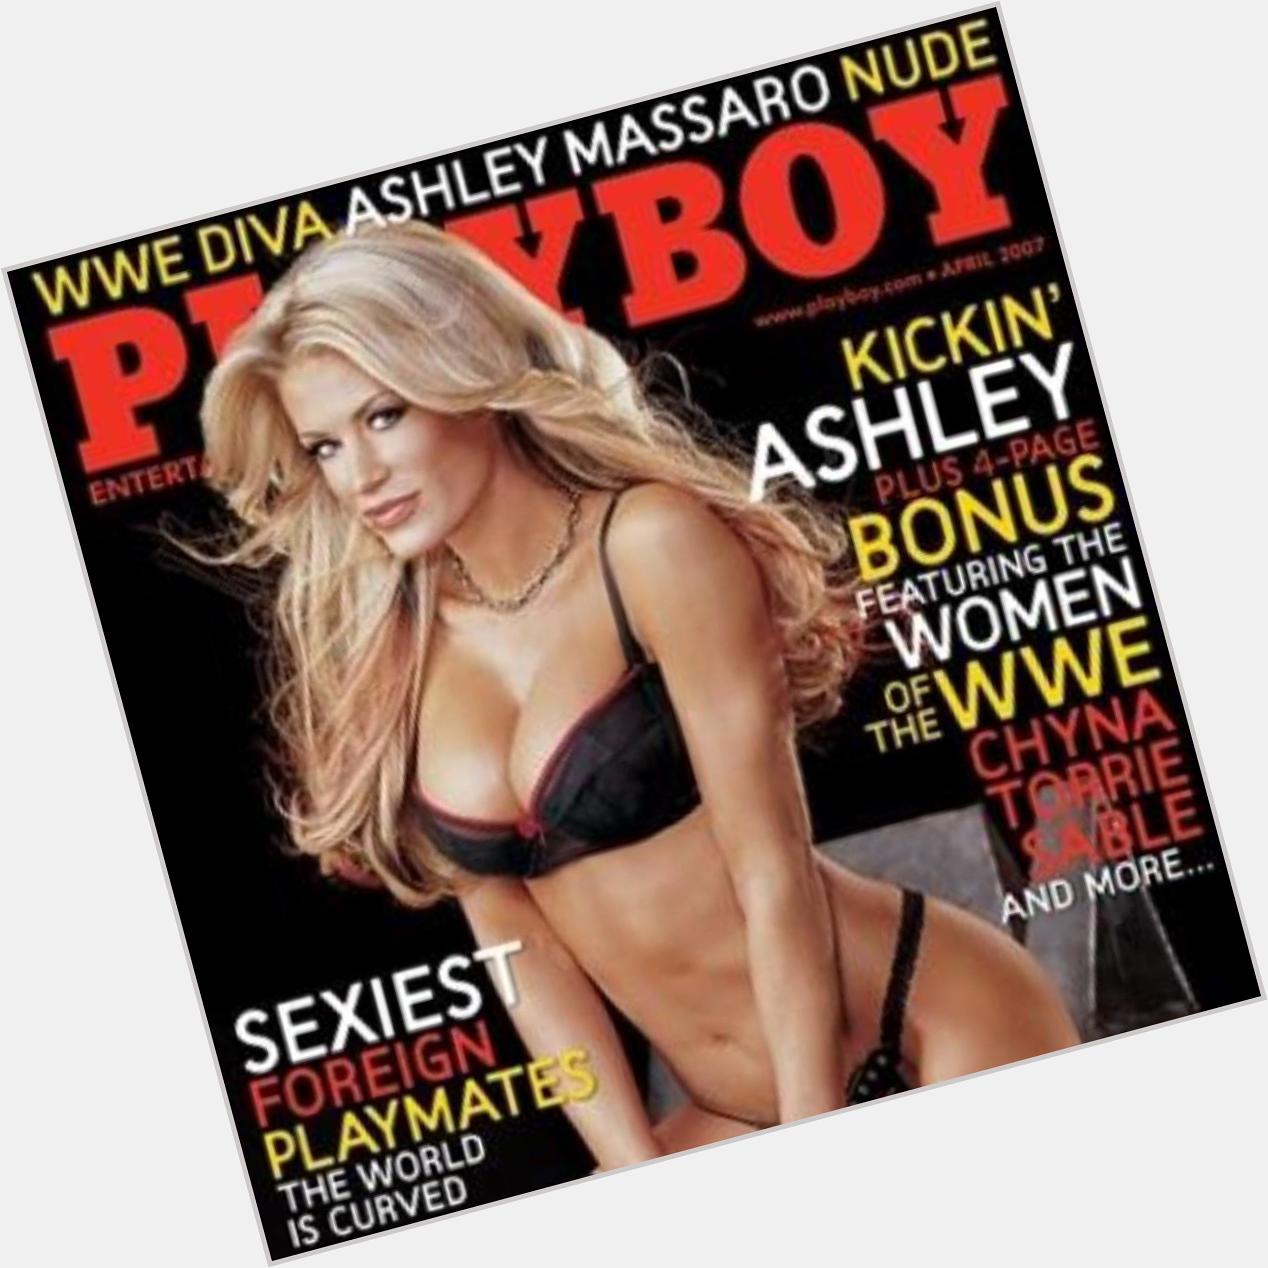 Happy birthday to former Diva Ashley Massaro!!!  